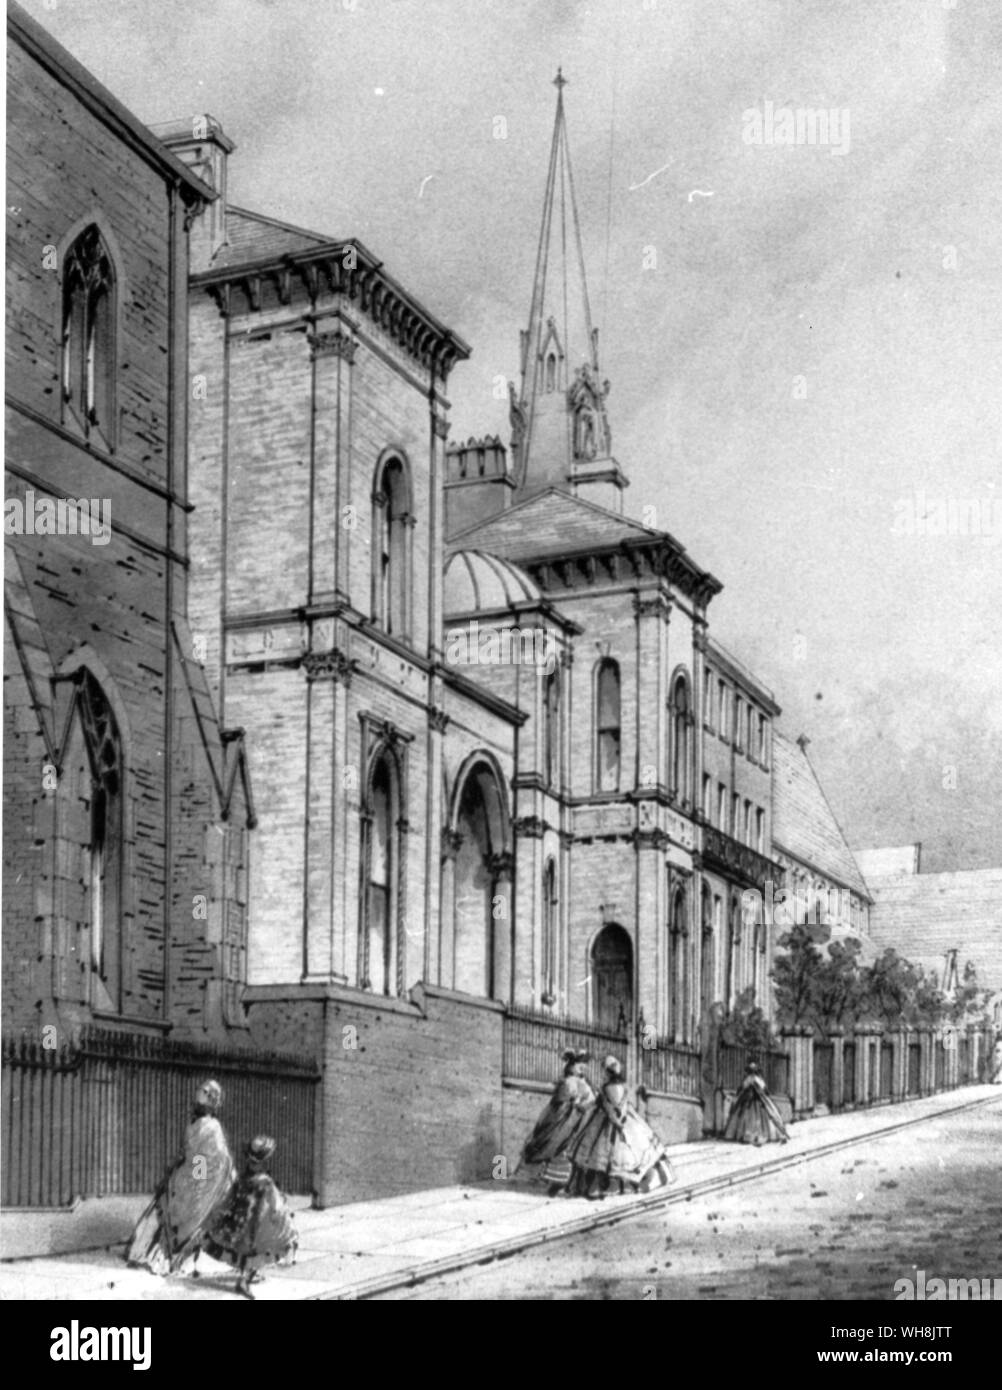 La sinagoga accanto alla chiesa nel luogo di speranza Foto Stock